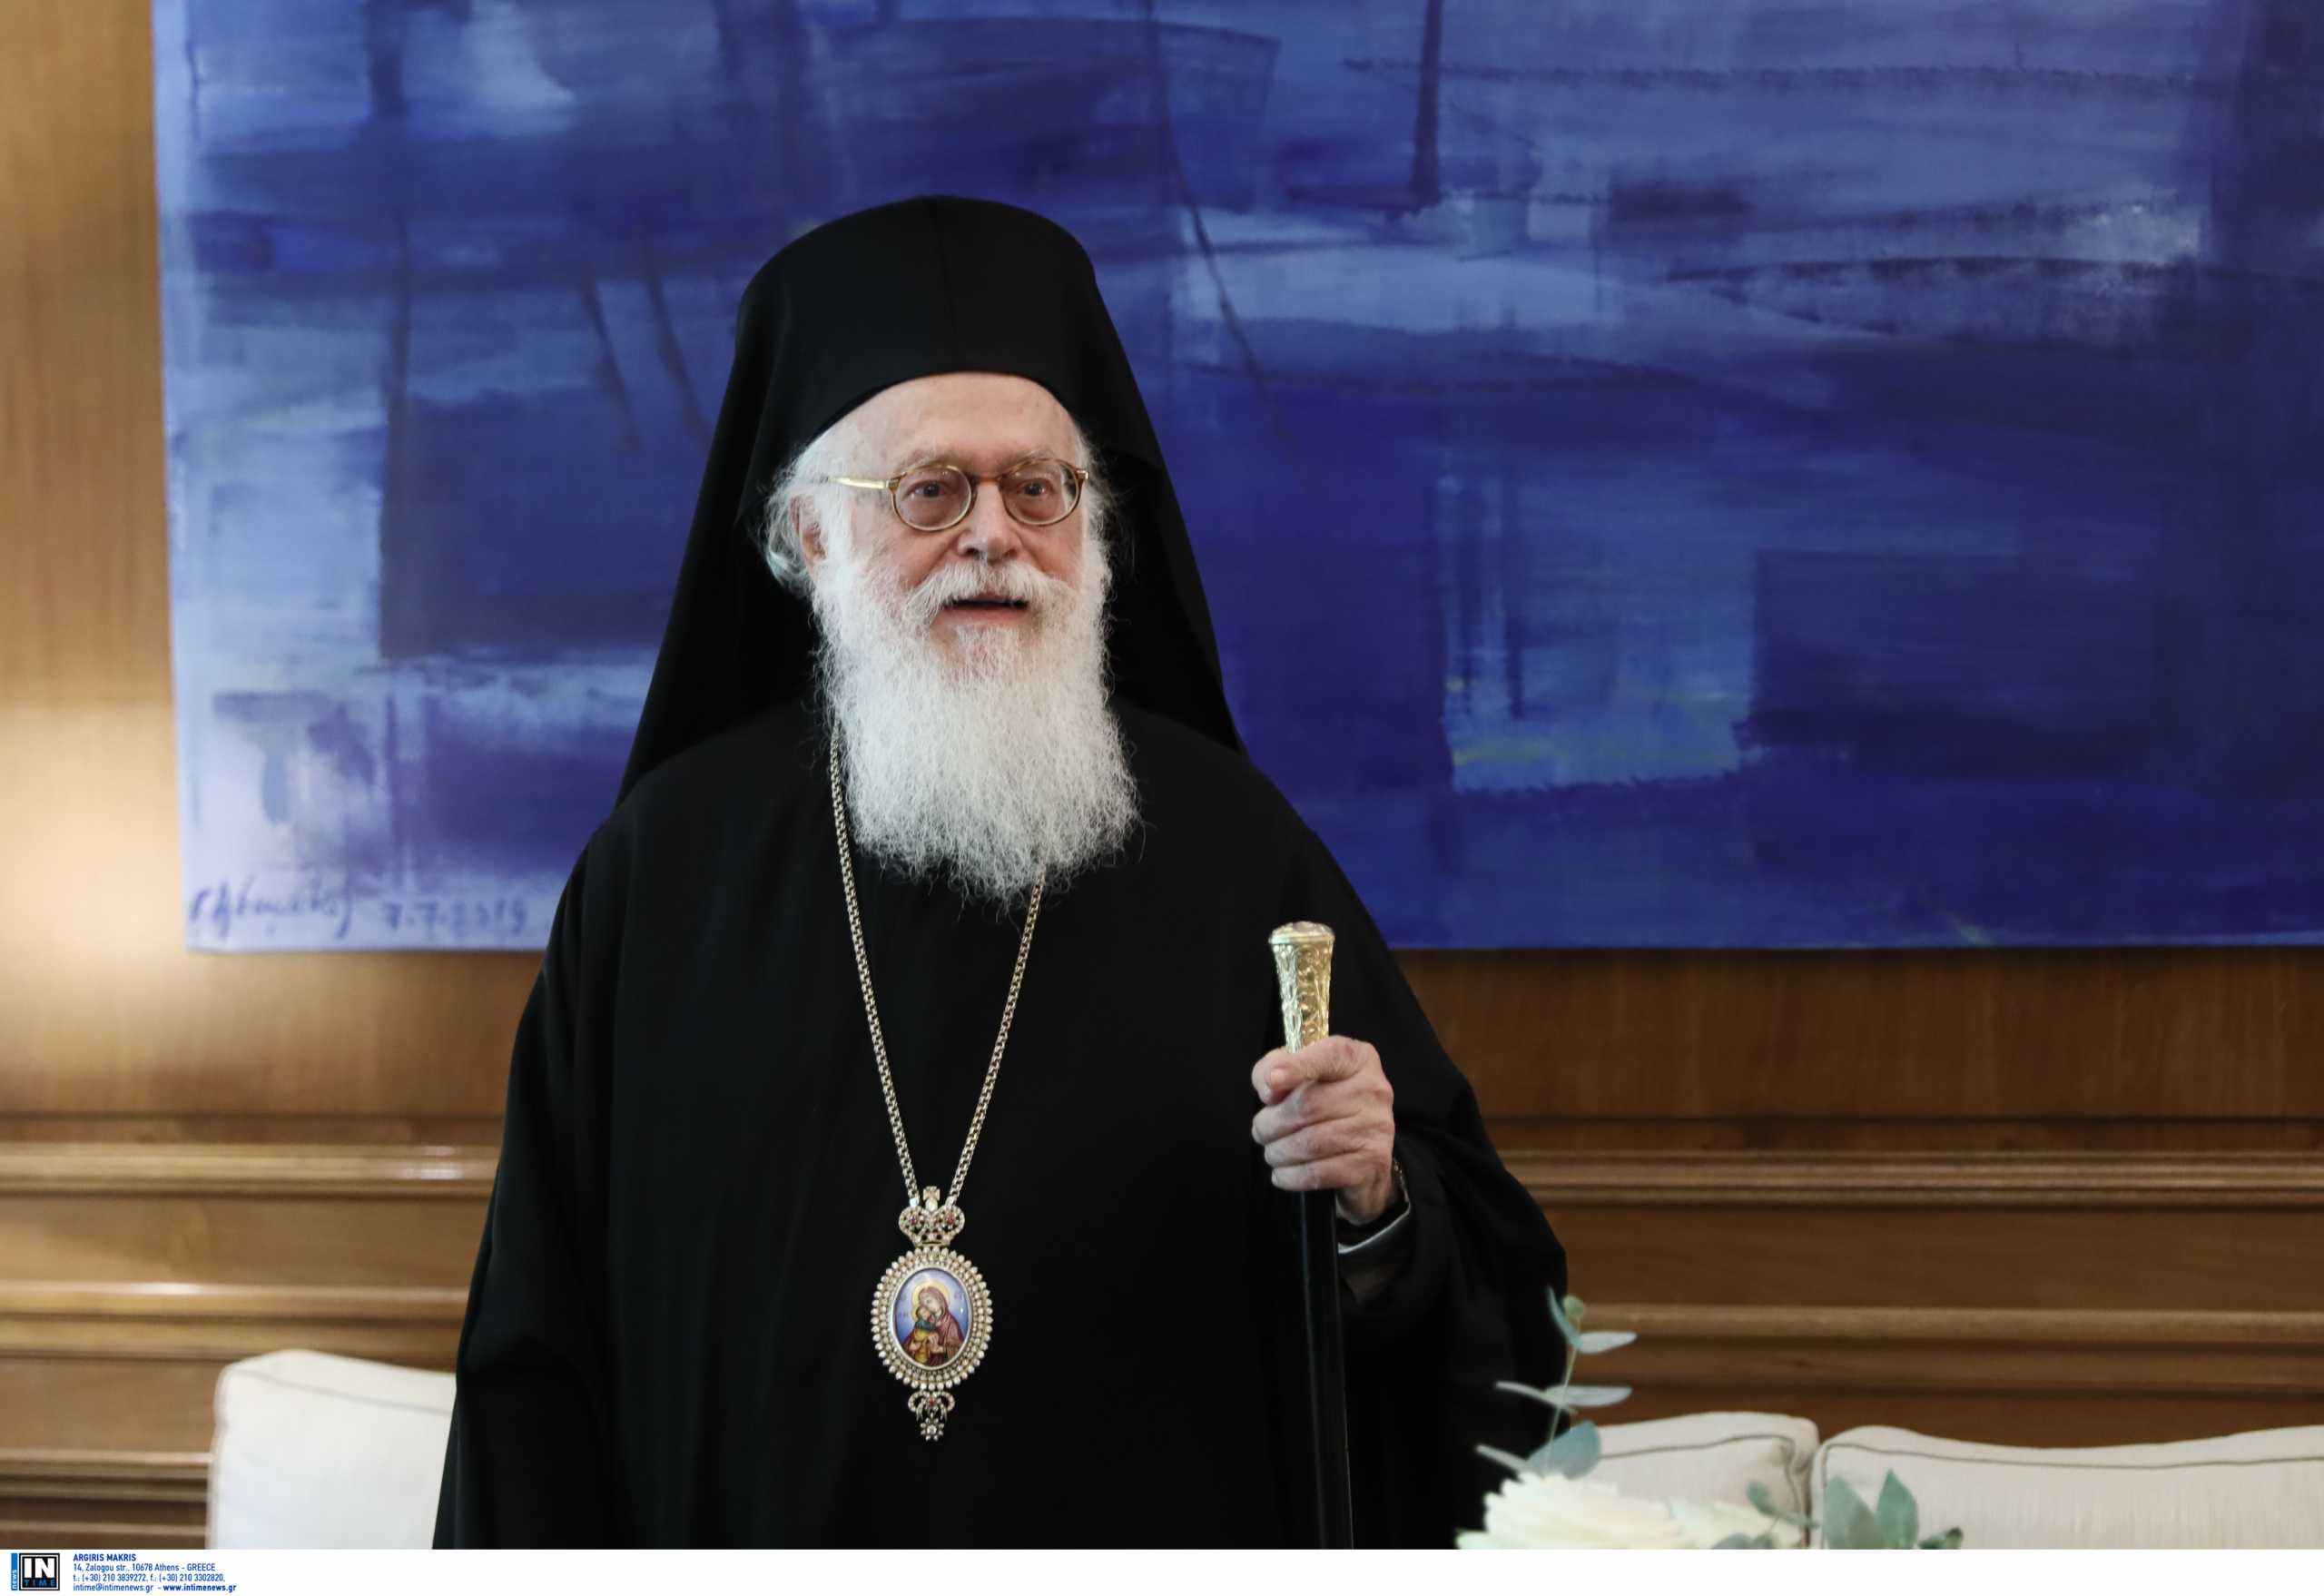 Αρχιεπίσκοπος Αλβανίας: Η συνείδηση της παρουσίας του Κυρίου Ιησού εμπνέει και παρηγορεί